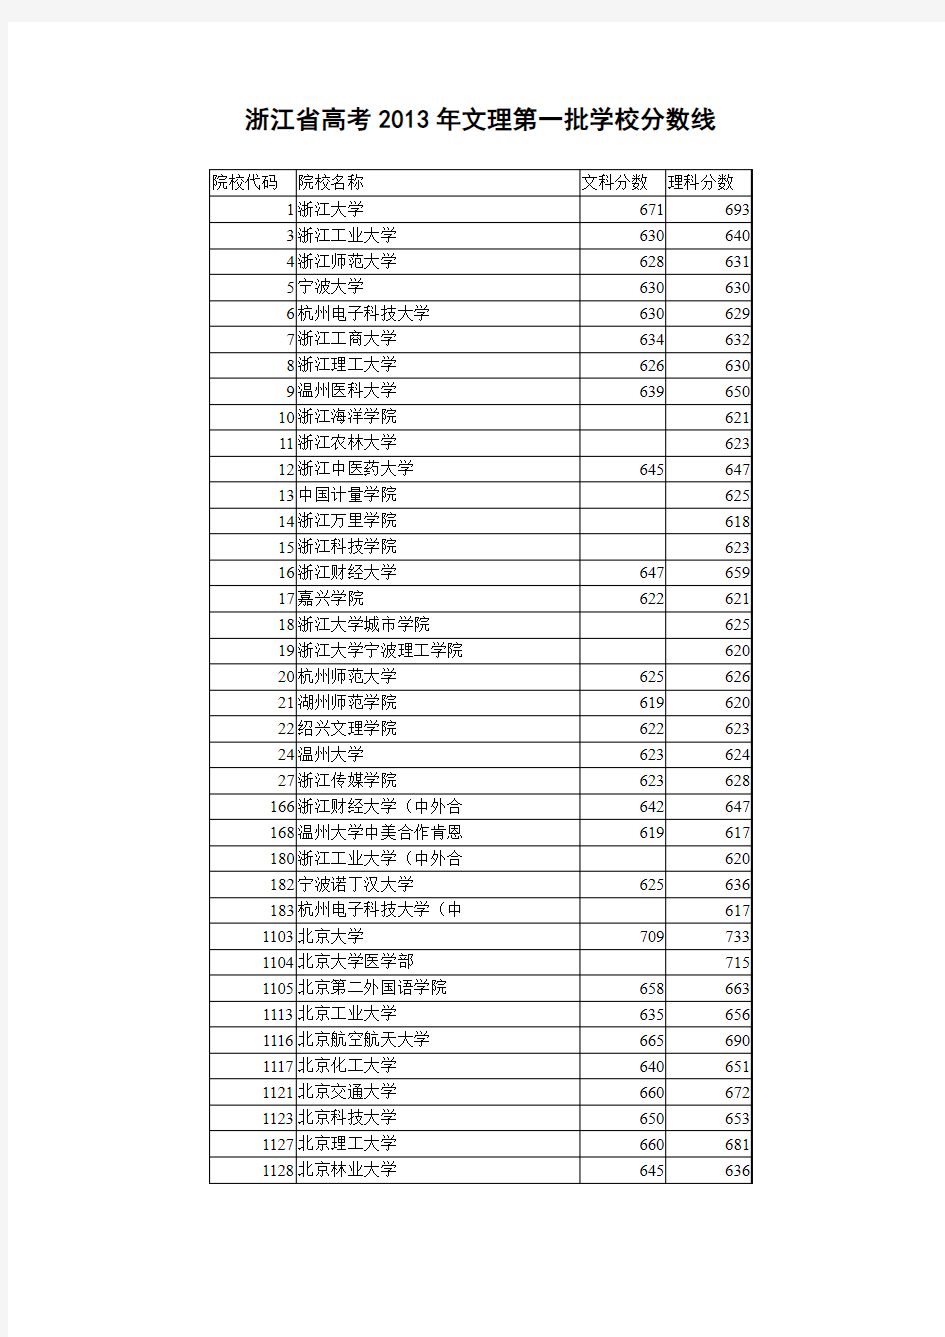 浙江省高考2013年文科理科一本学校分数线